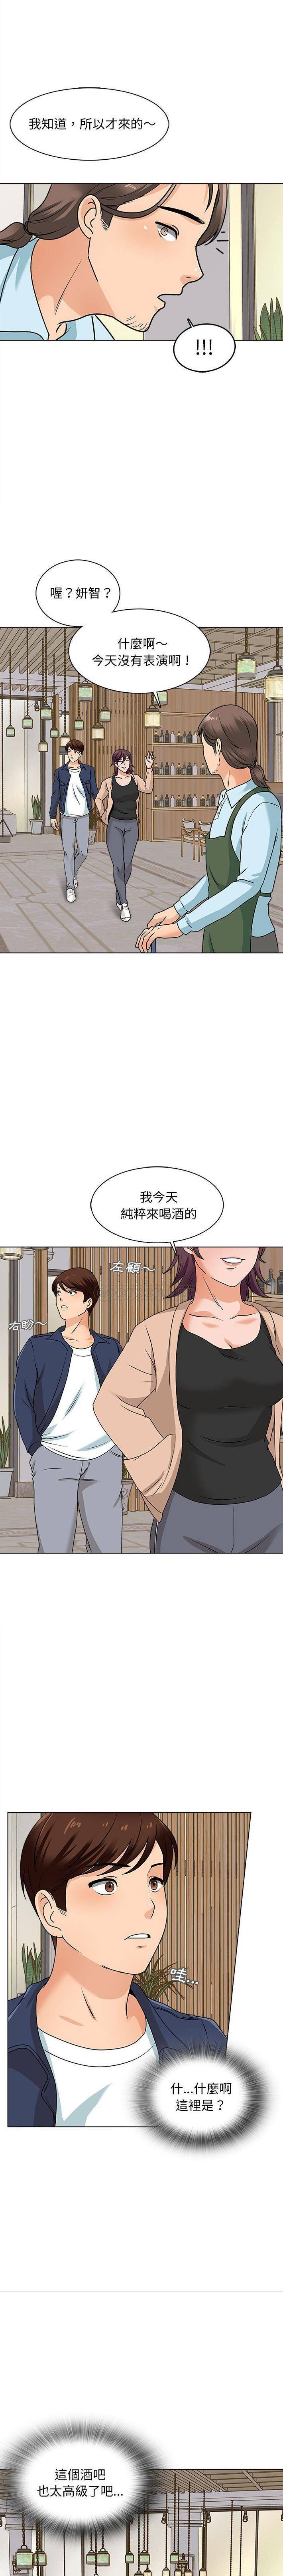 韩国污漫画 幸福公寓 第15话 15